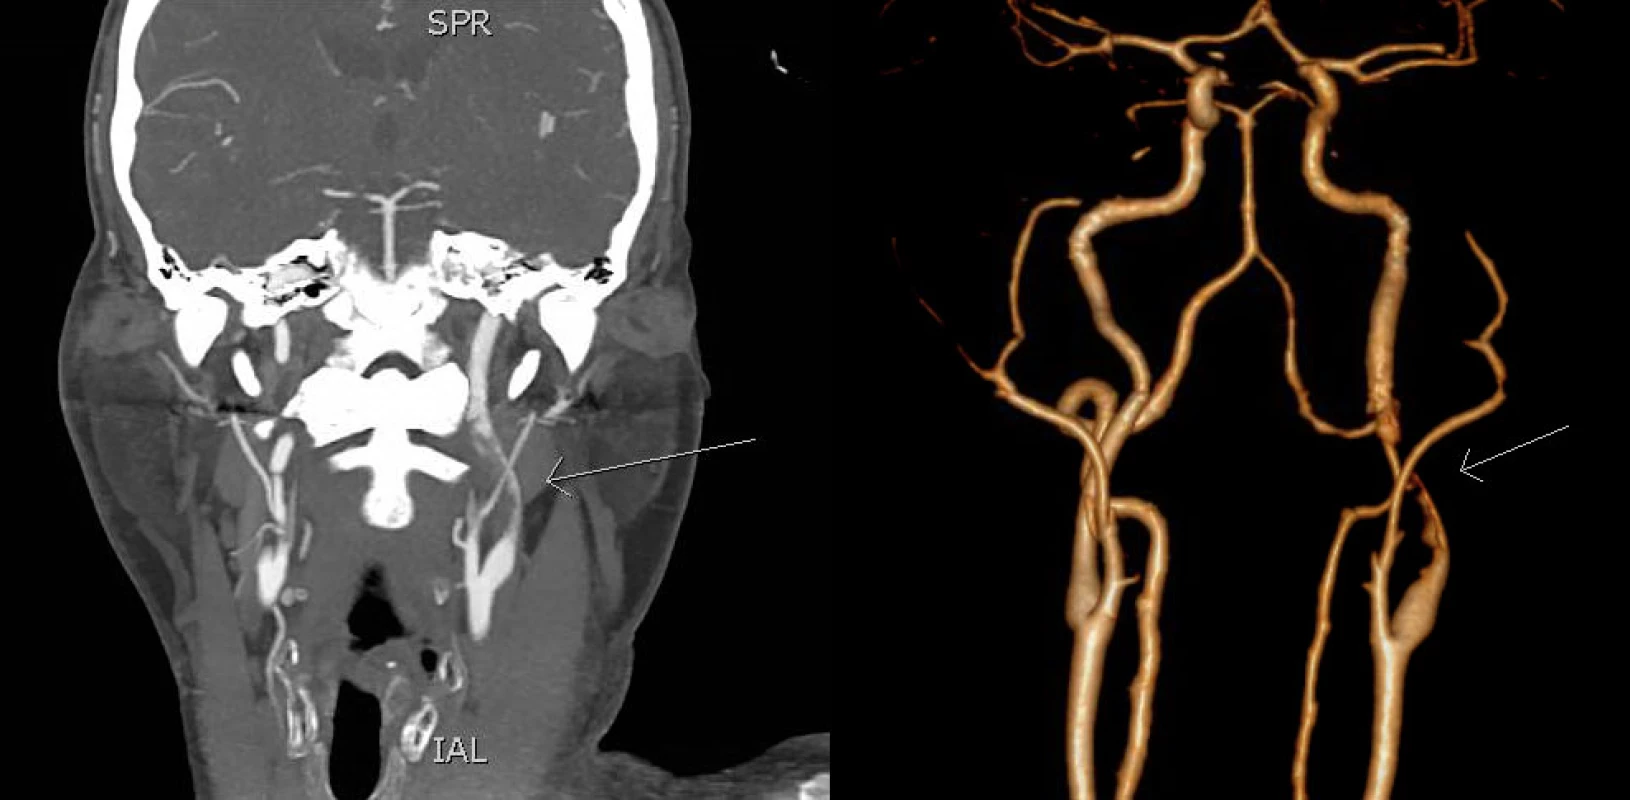 CTA in coronal section (left) and 3D reconstruction (right) shows short intraluminal filling defect in the M2 segment of the left MCA (arrow). MCA – middle cerebral artery<br>
Obr. 1 CTA ve frontálním řezu (vlevo) a 3D rekonstrukce (vpravo) ukazuje krátký intraluminální defekt v úseku M2 levé ACM (šipka). ACM – arteria cerbri media